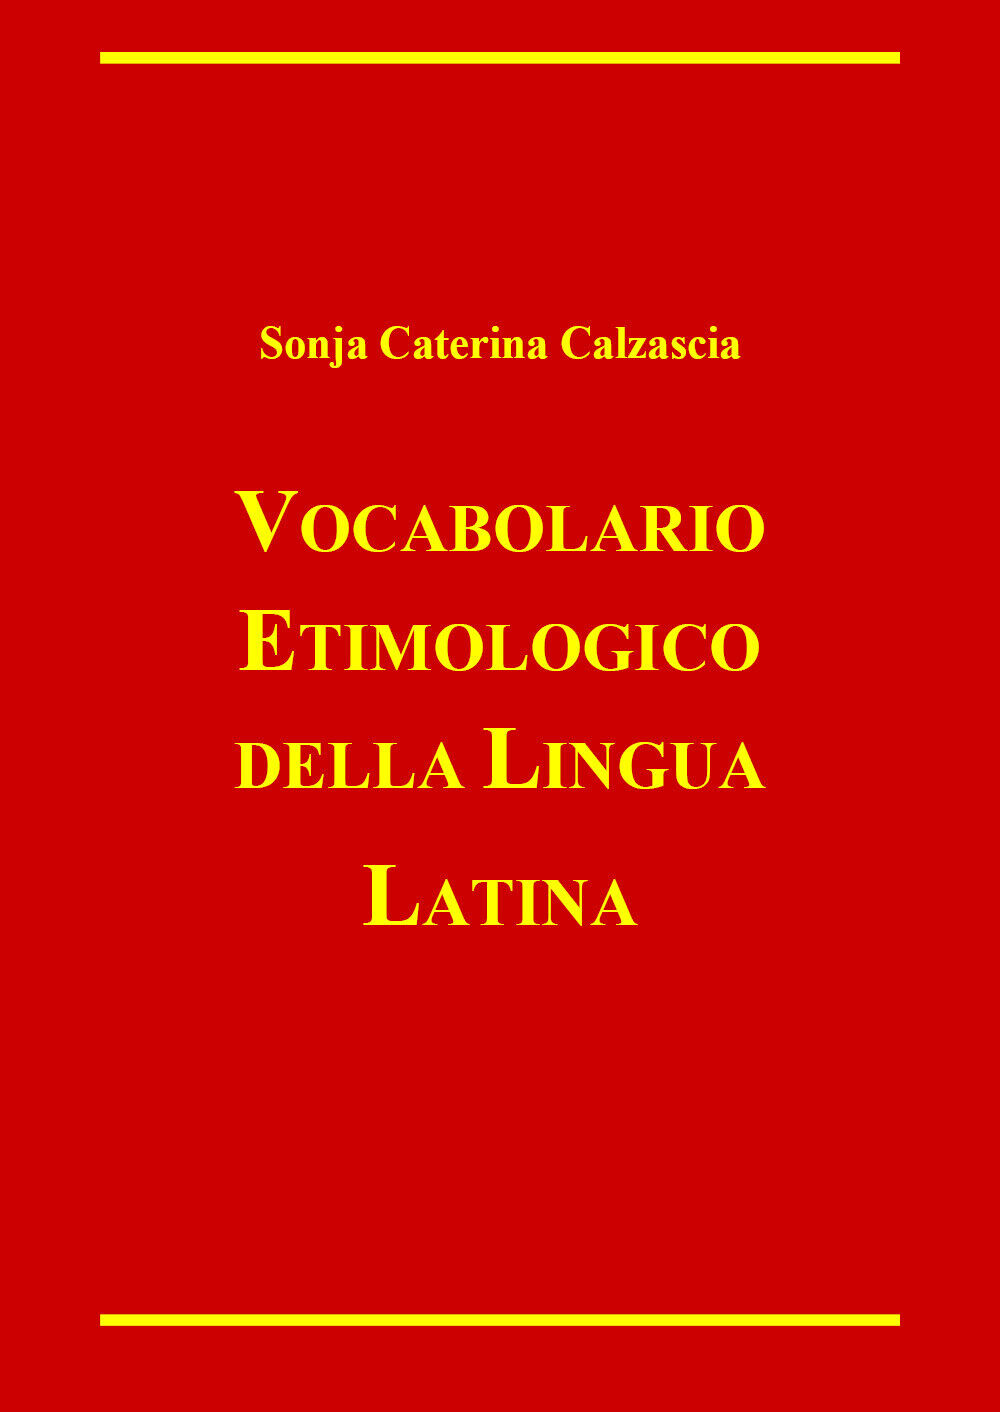 Vocabolario etimologico della lingua latina di Sonja Caterina Calzascia,  2022,  libro usato